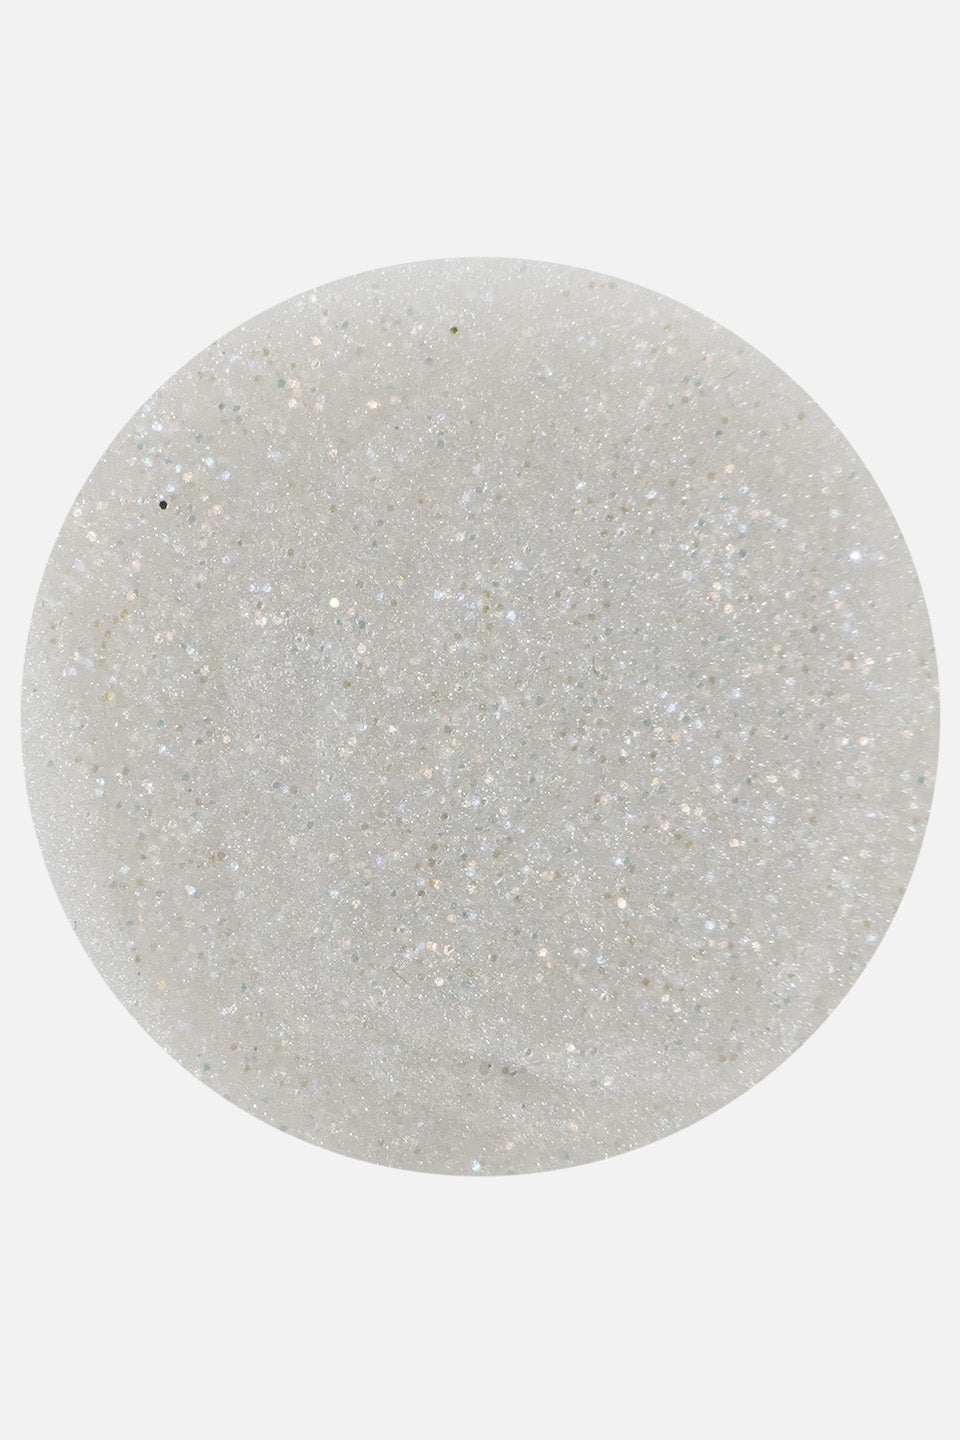 Polvere acrilica bianco diamante glitter  3 g